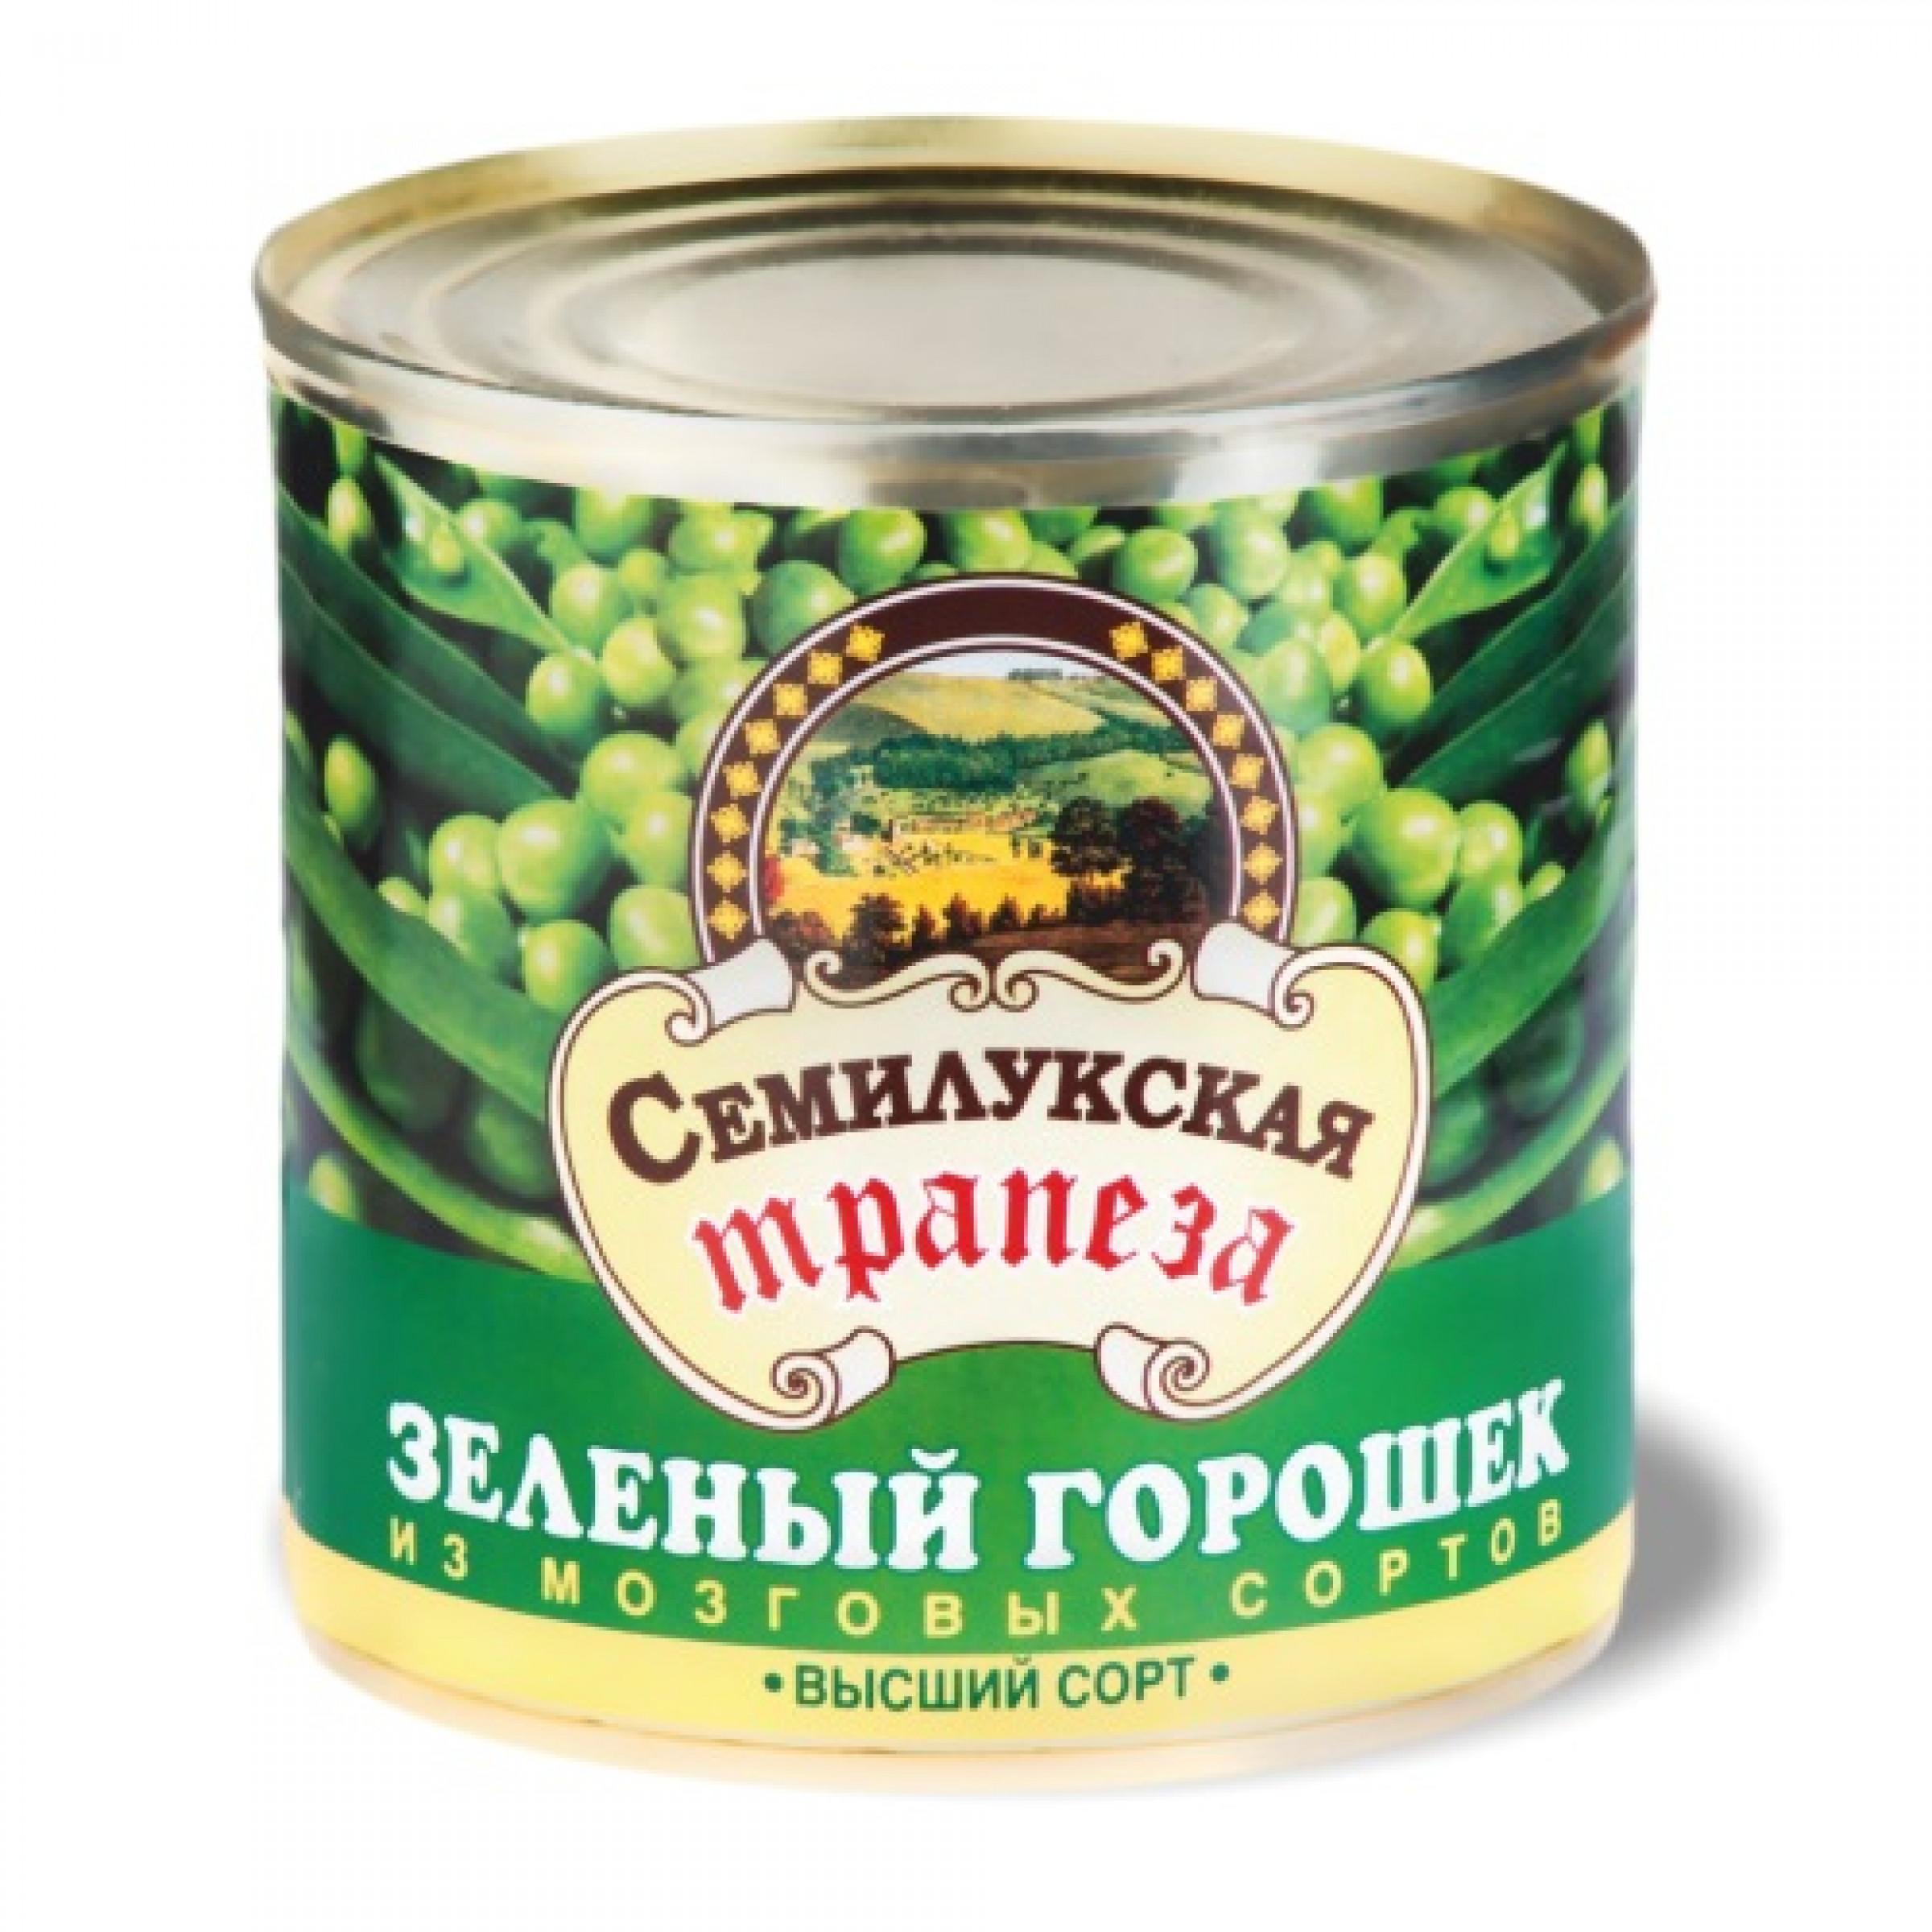 Зеленый горошек Семилукская трапеза Фреш, 400 гр., ж/б